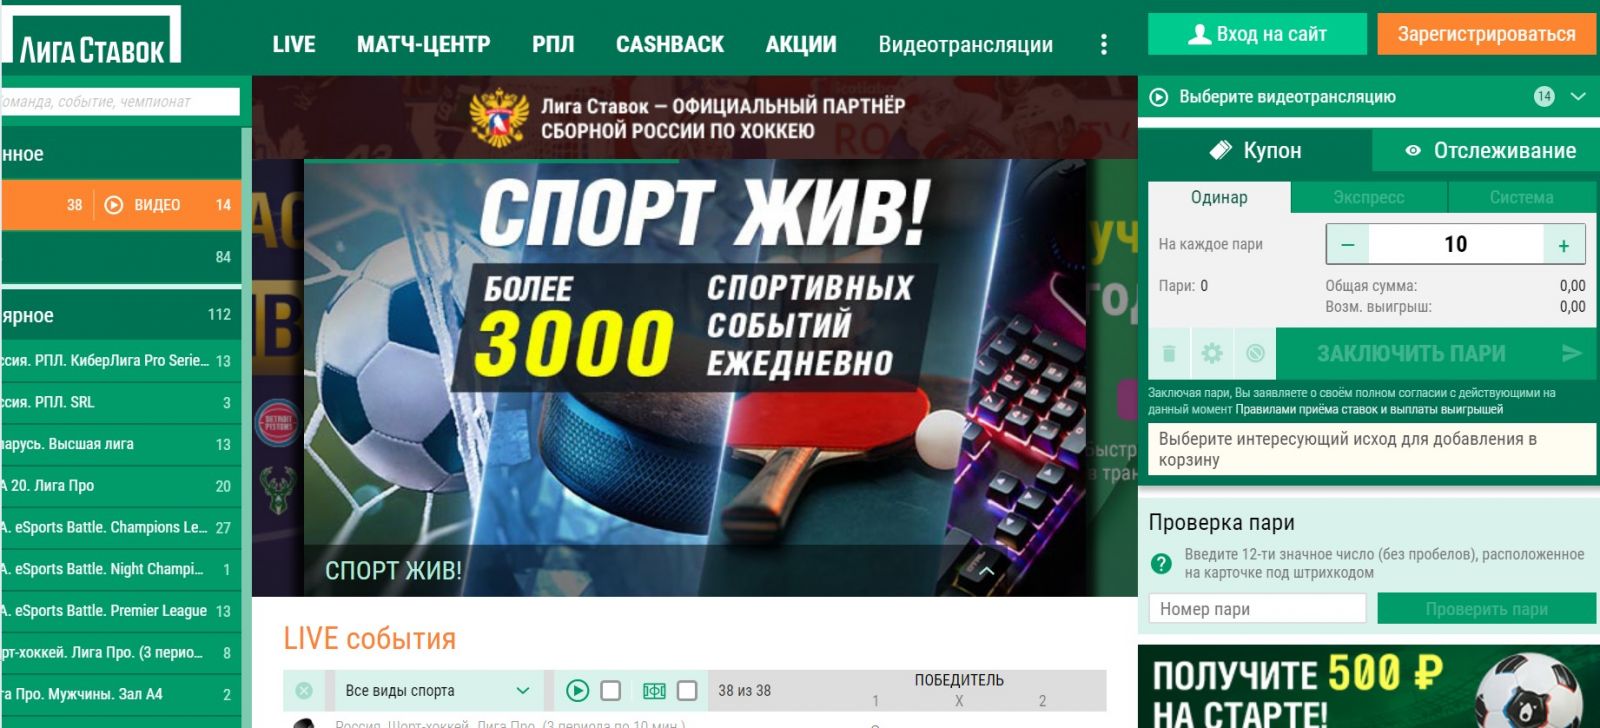 Официальные конторы ставок на спорт демо игры казино автоматы бесплатно без регистрации jaguar moon